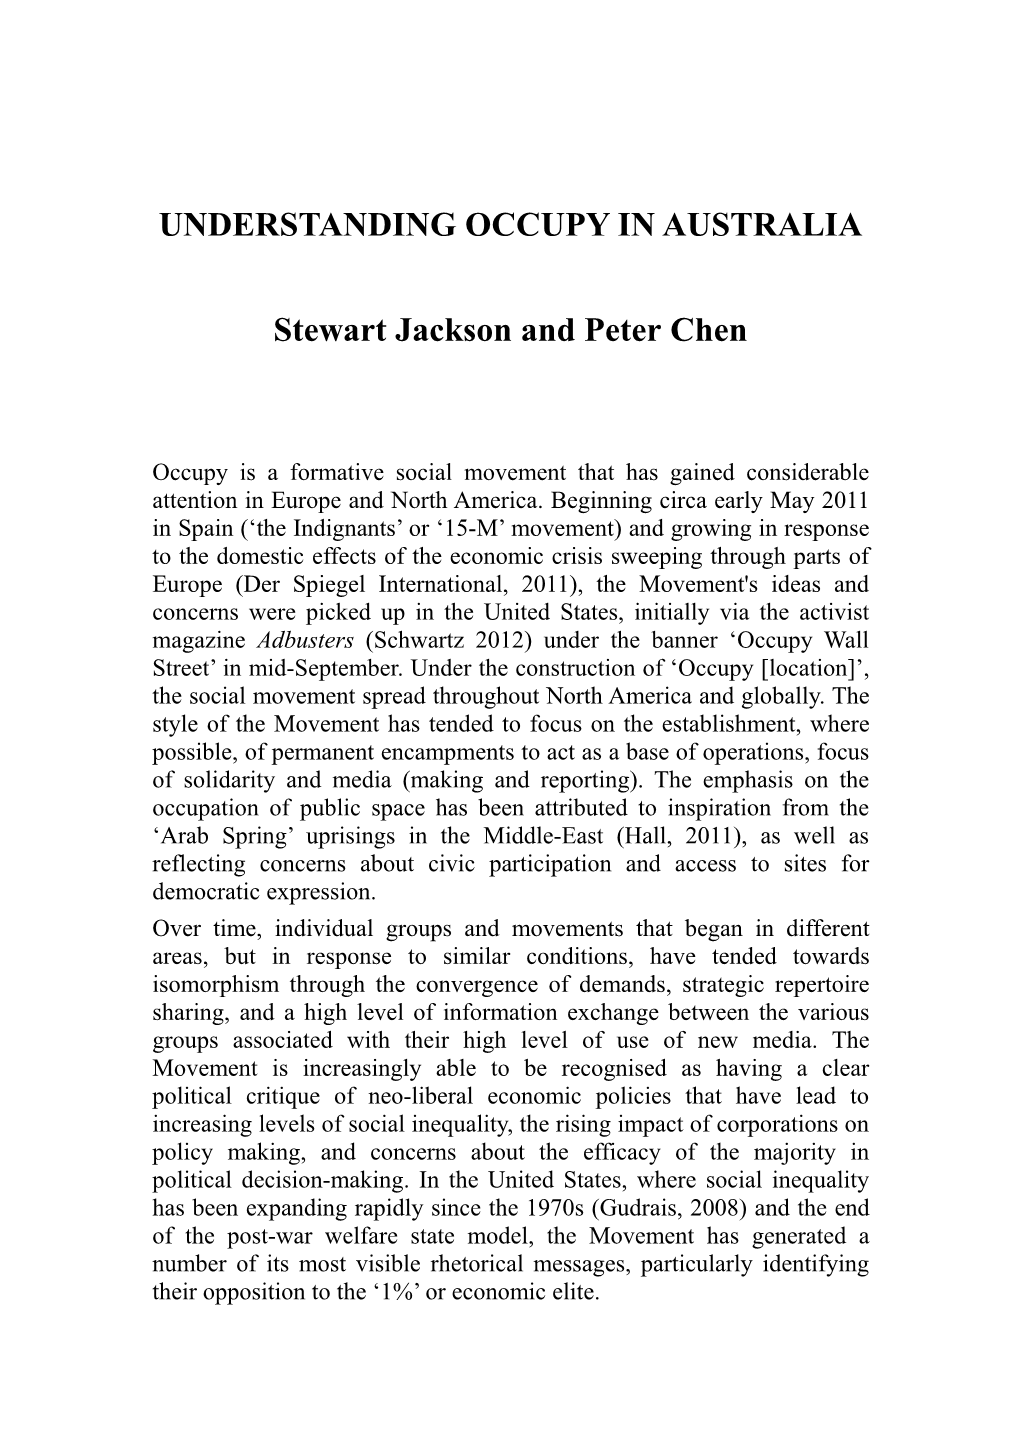 Understanding Occupy in Australia